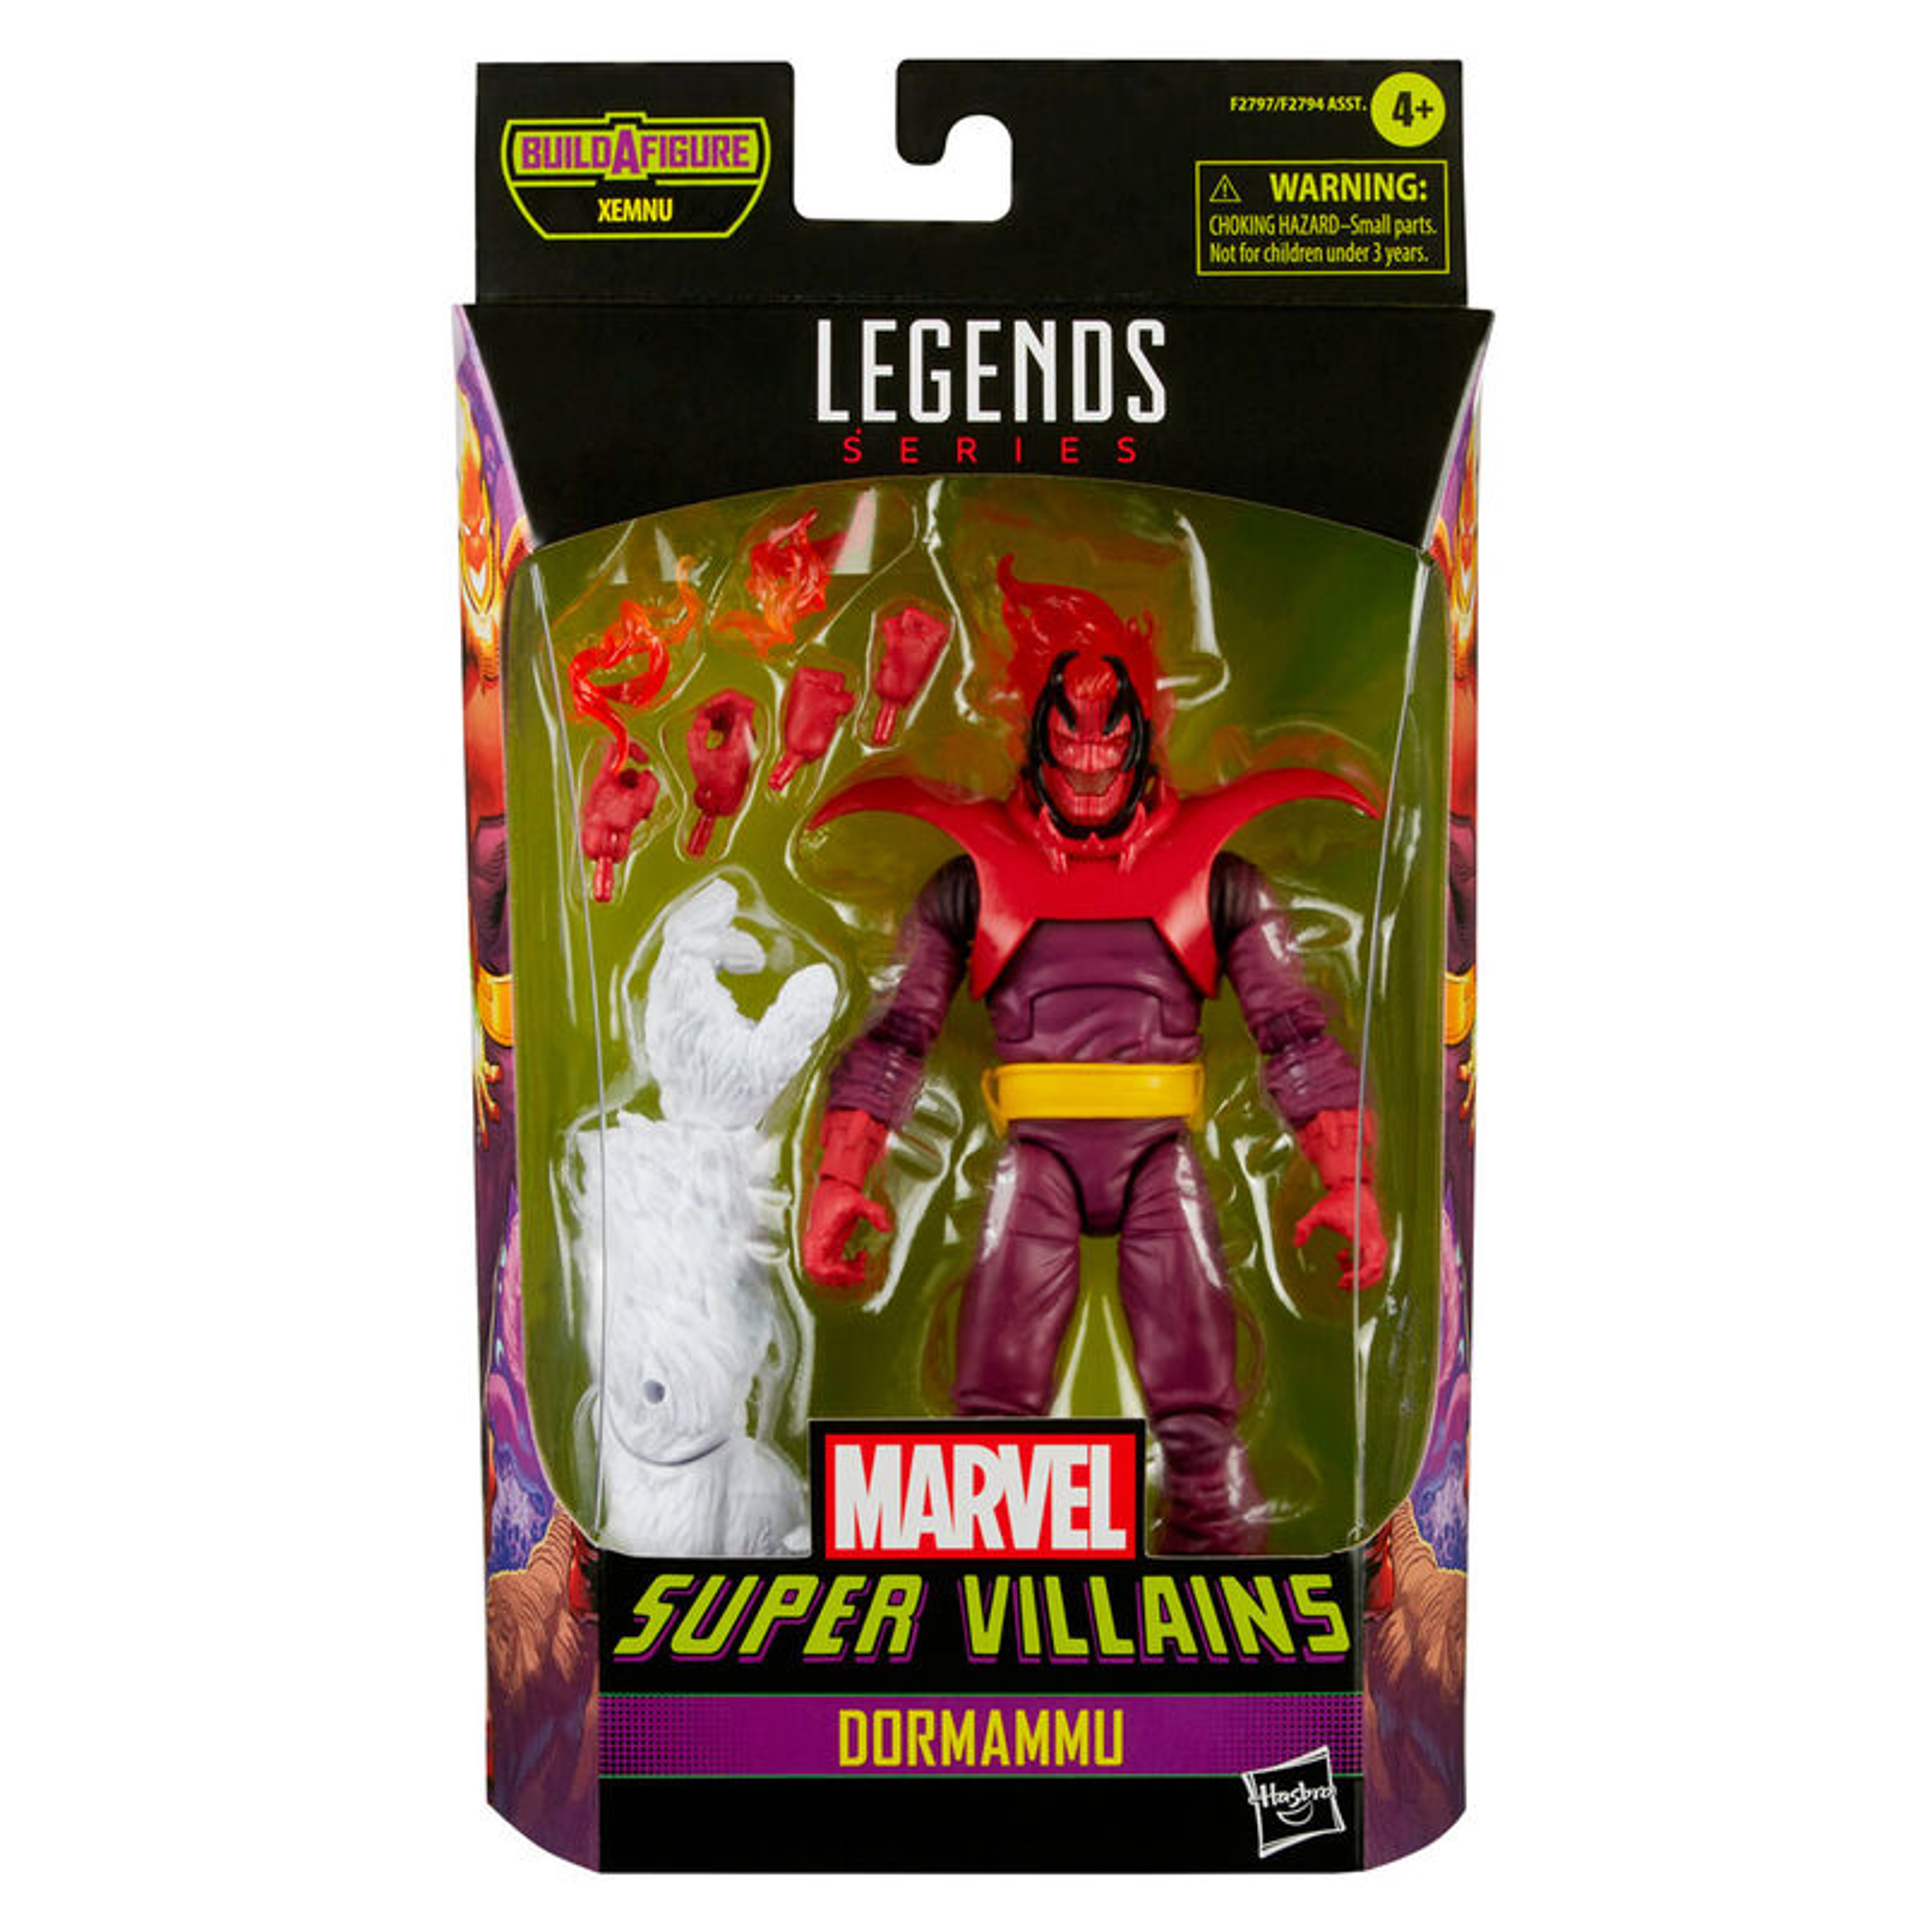 Marvel Legends Series - Build-A-Figure Série Xemnu - Marvel Super Villains Figurine d'action de Dormammu 15cm